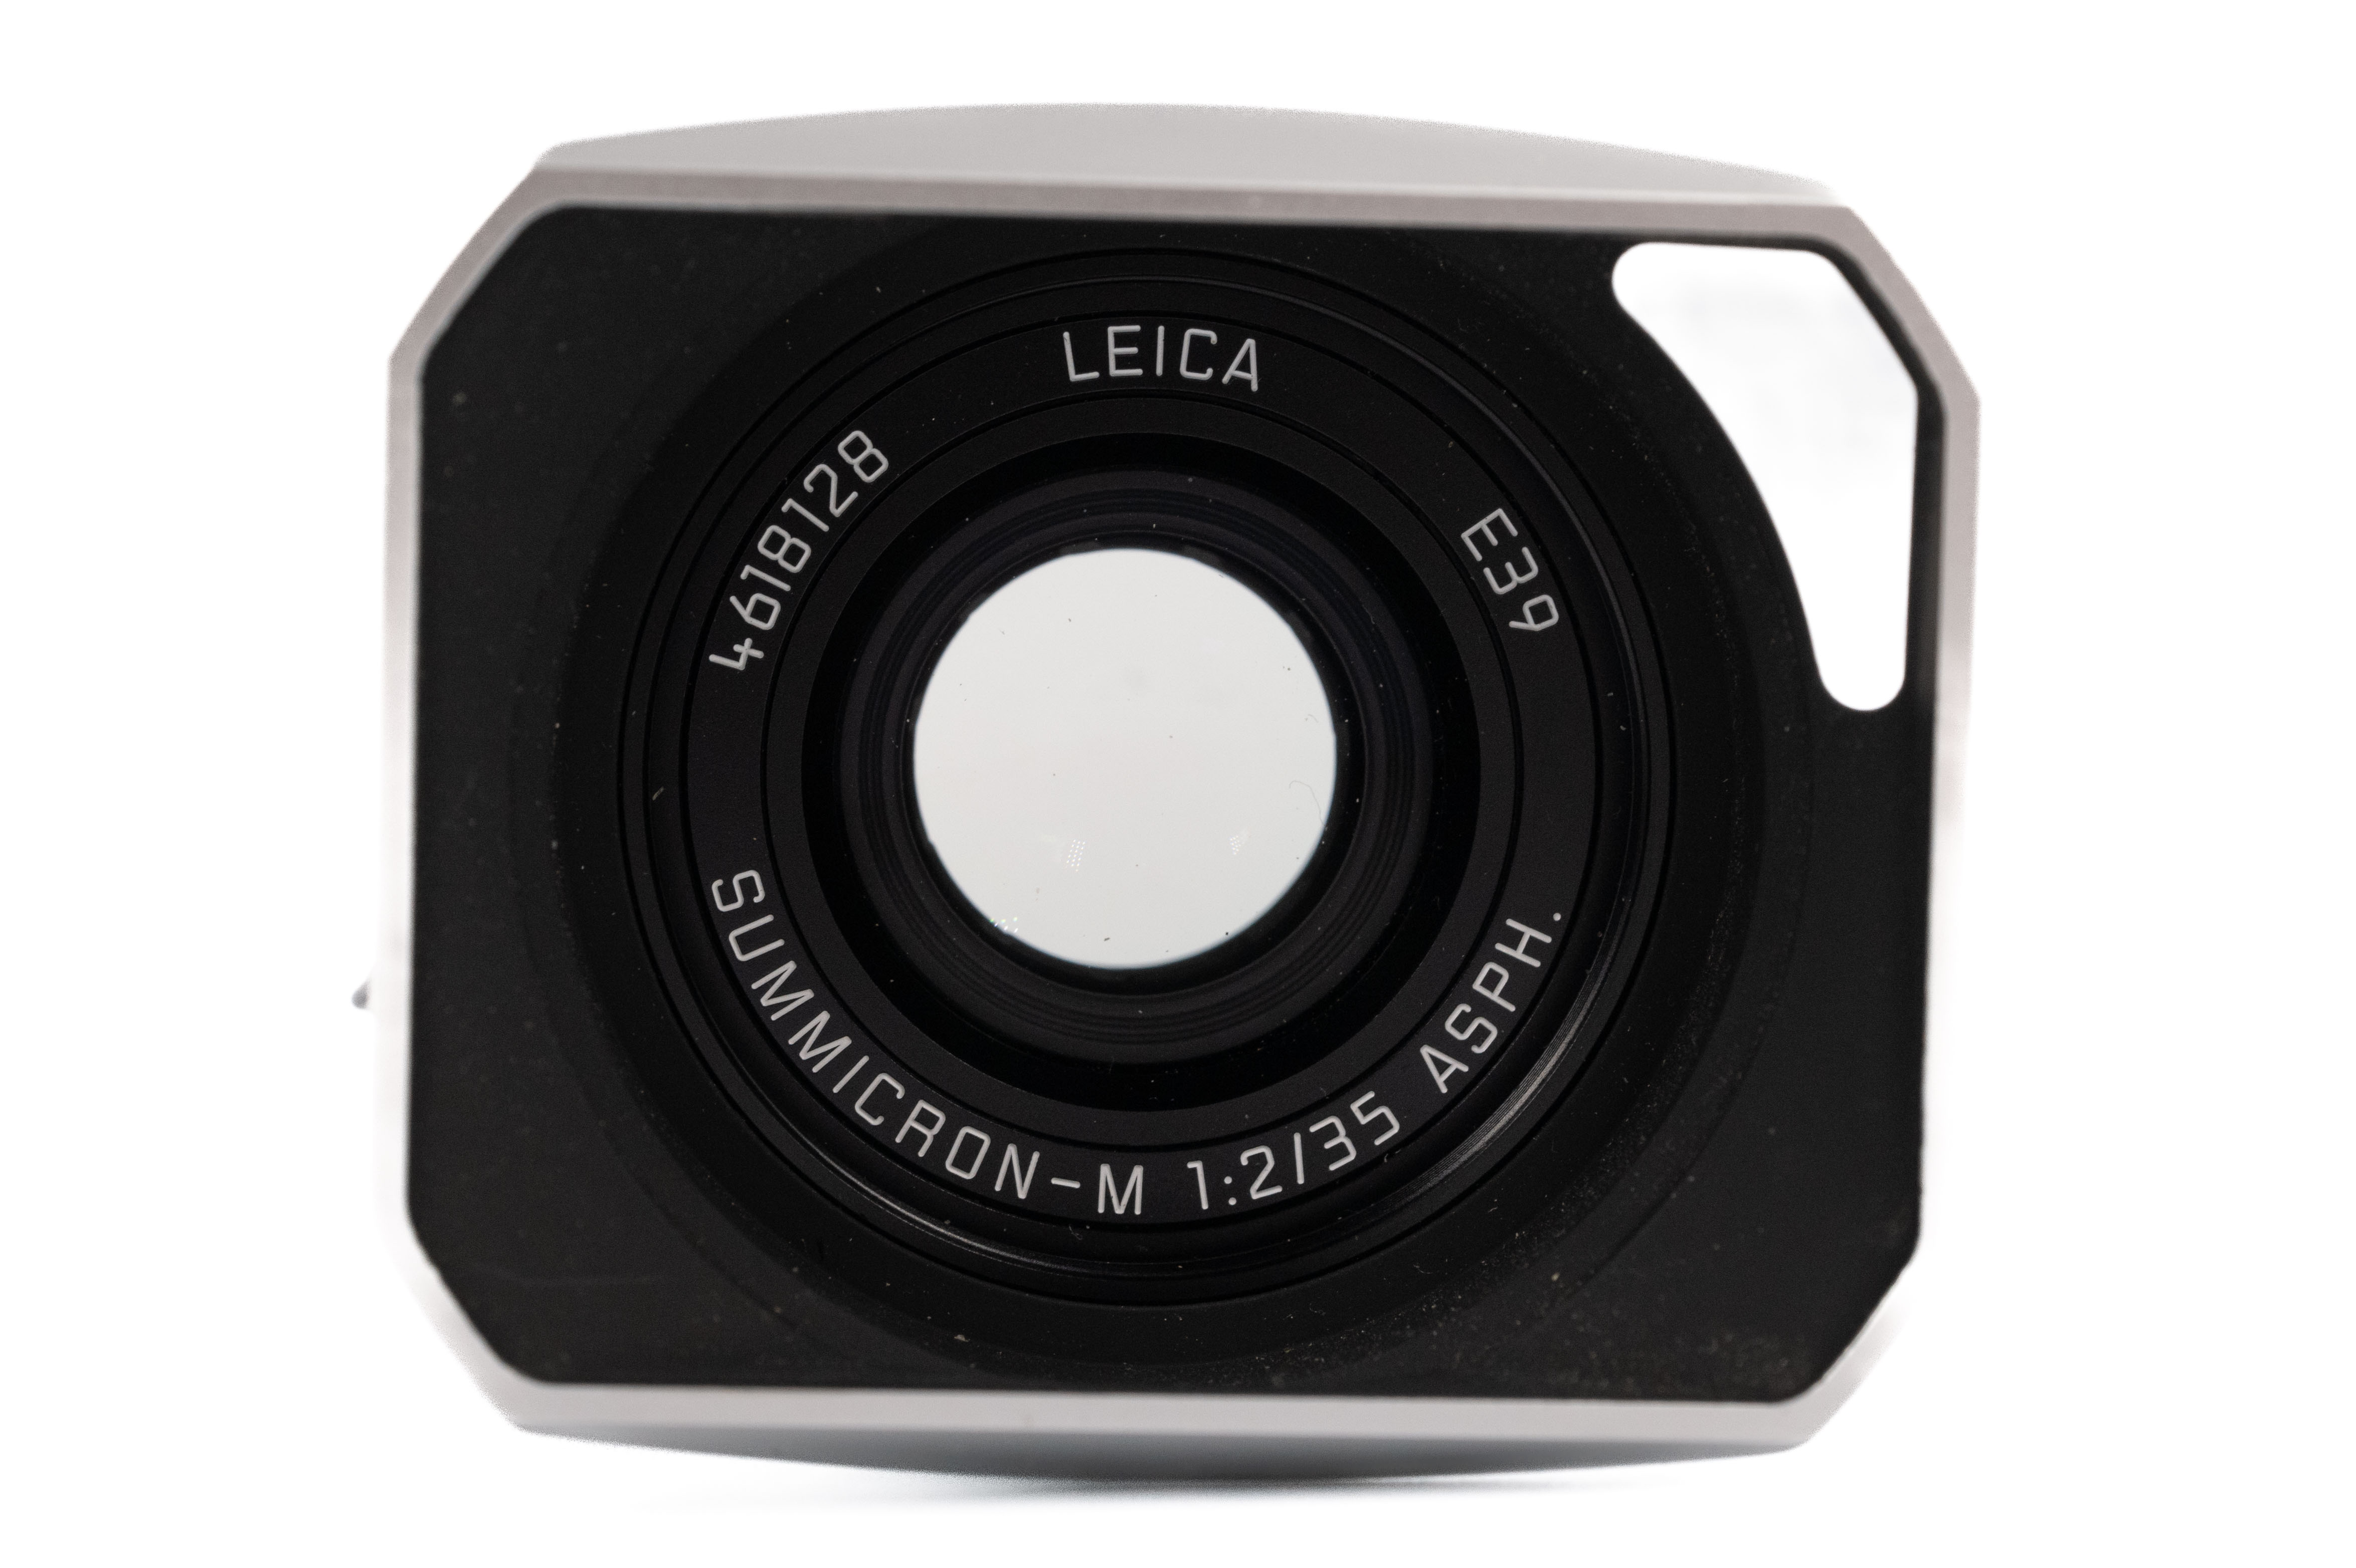 Leica Summicron-M 35mm f/2 ASPH v2 Silver 11674